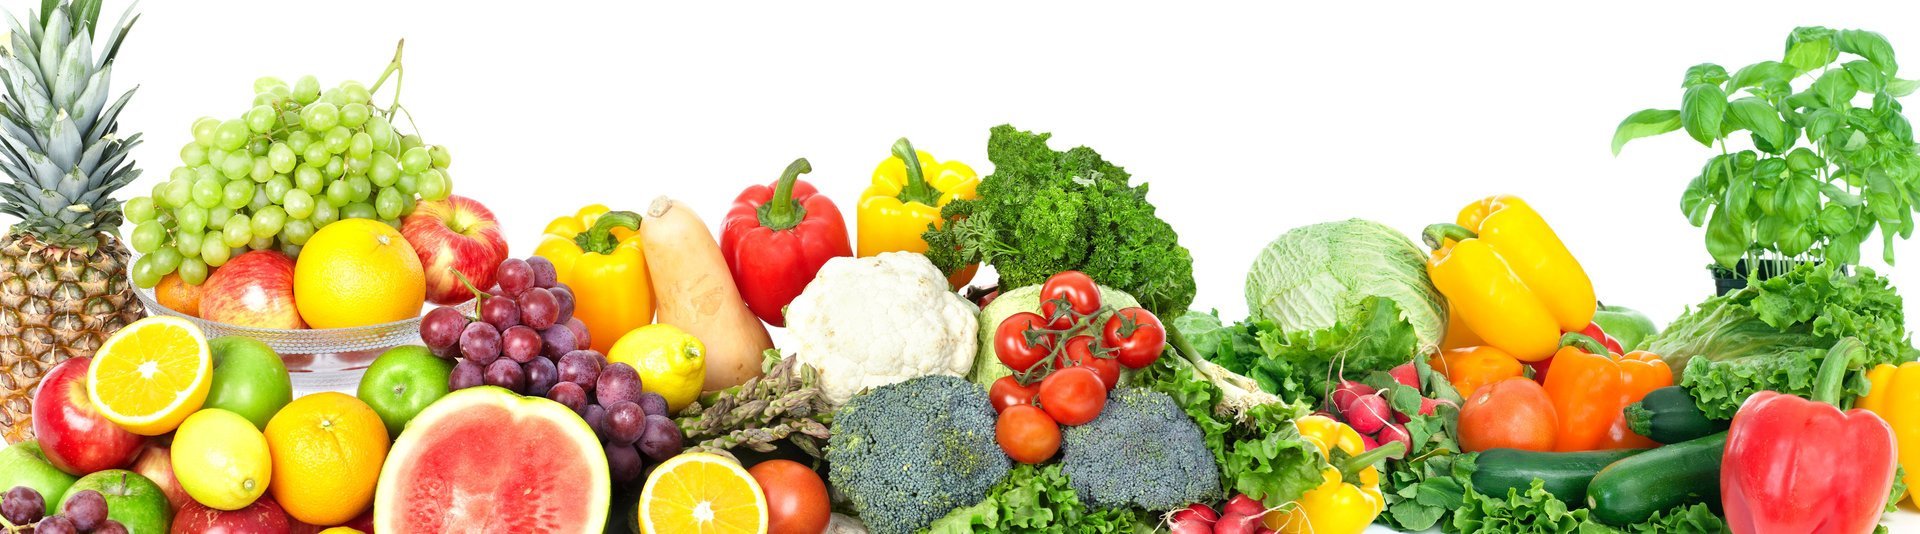 Gesunde Ernährung Obst und Gemüse